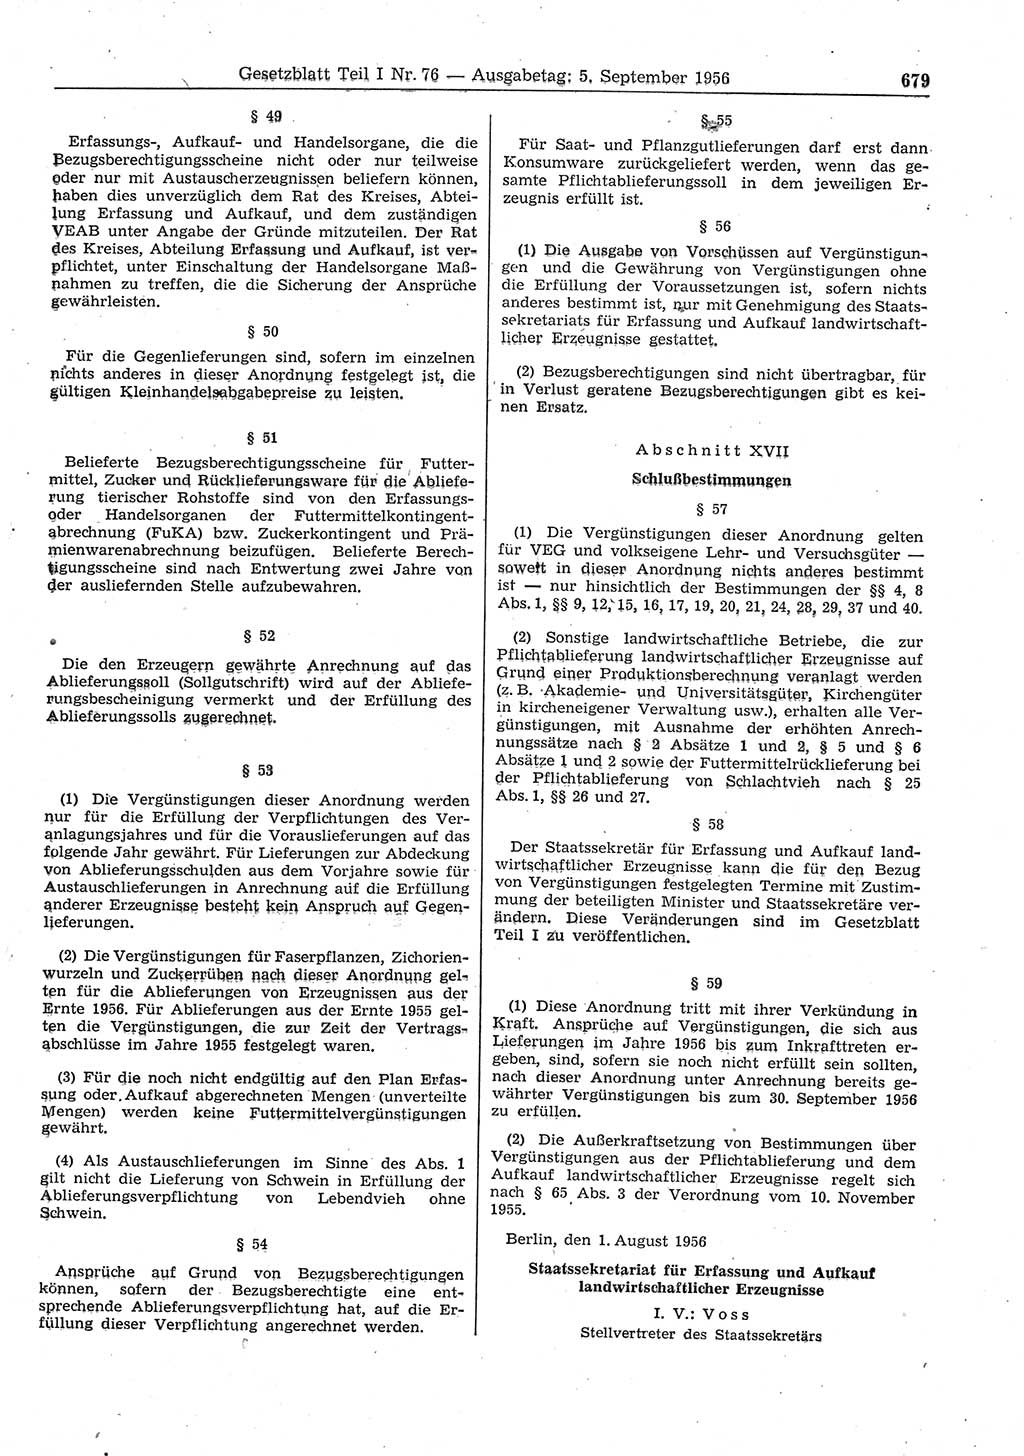 Gesetzblatt (GBl.) der Deutschen Demokratischen Republik (DDR) Teil Ⅰ 1956, Seite 679 (GBl. DDR Ⅰ 1956, S. 679)